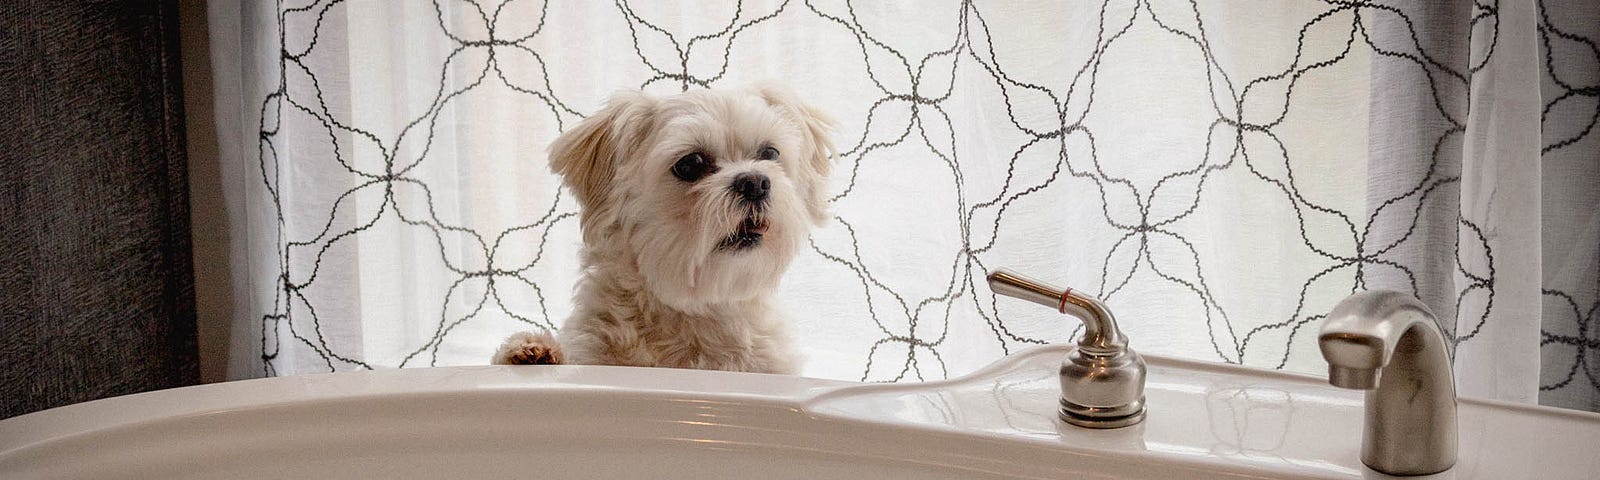 My dog, Rowdy, at the bathtub.